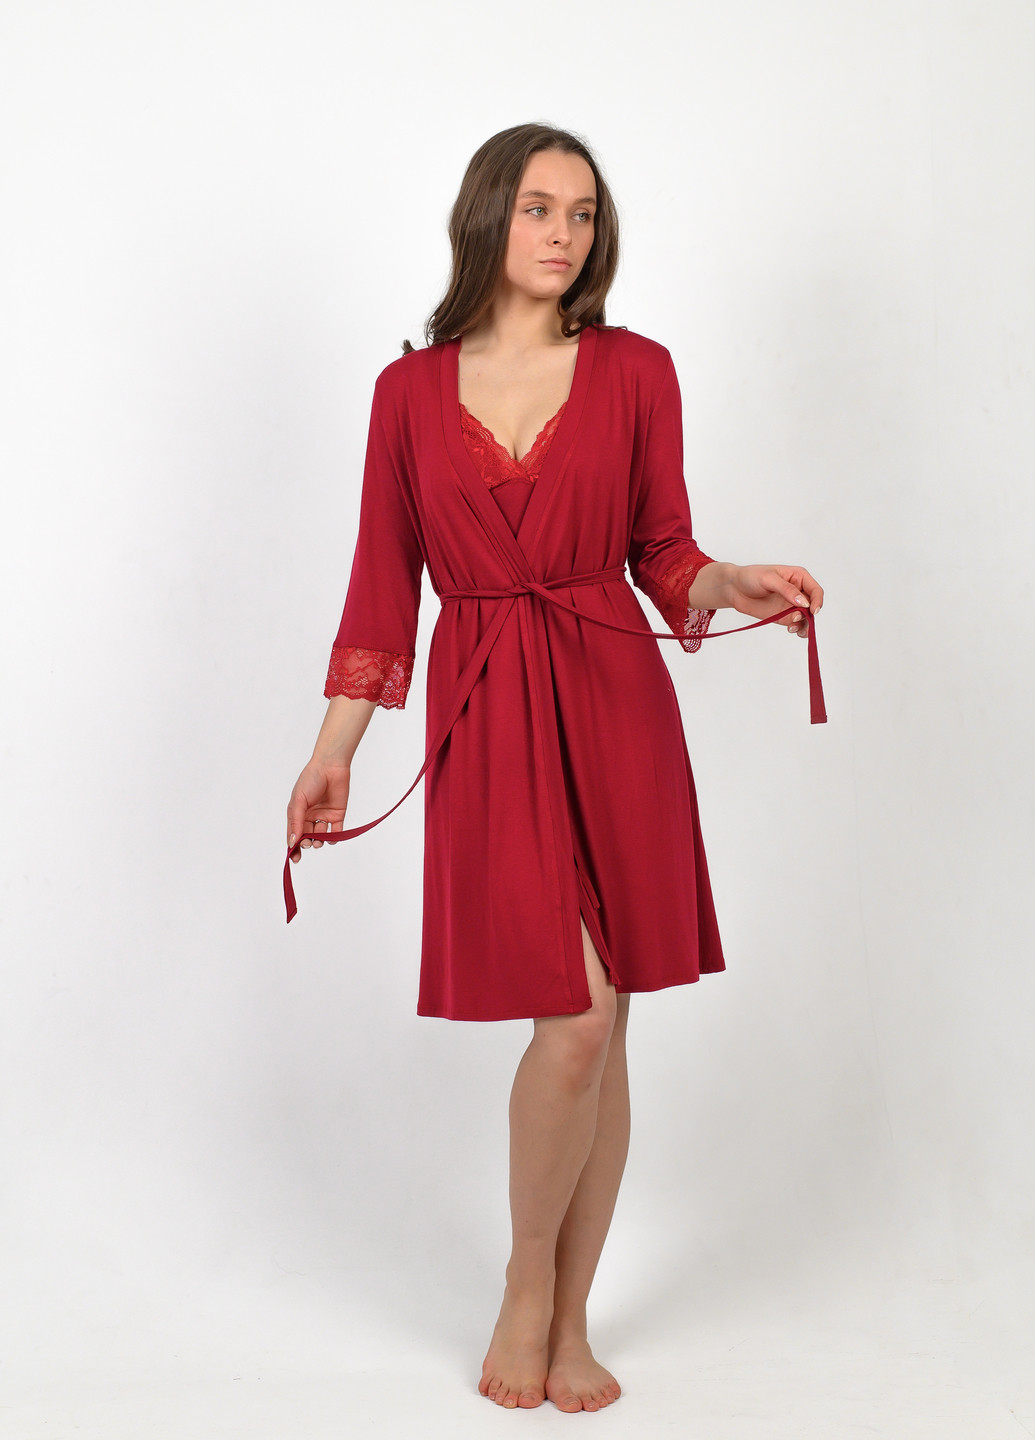 Темно-красный женский комплект халат+сорочка NEL